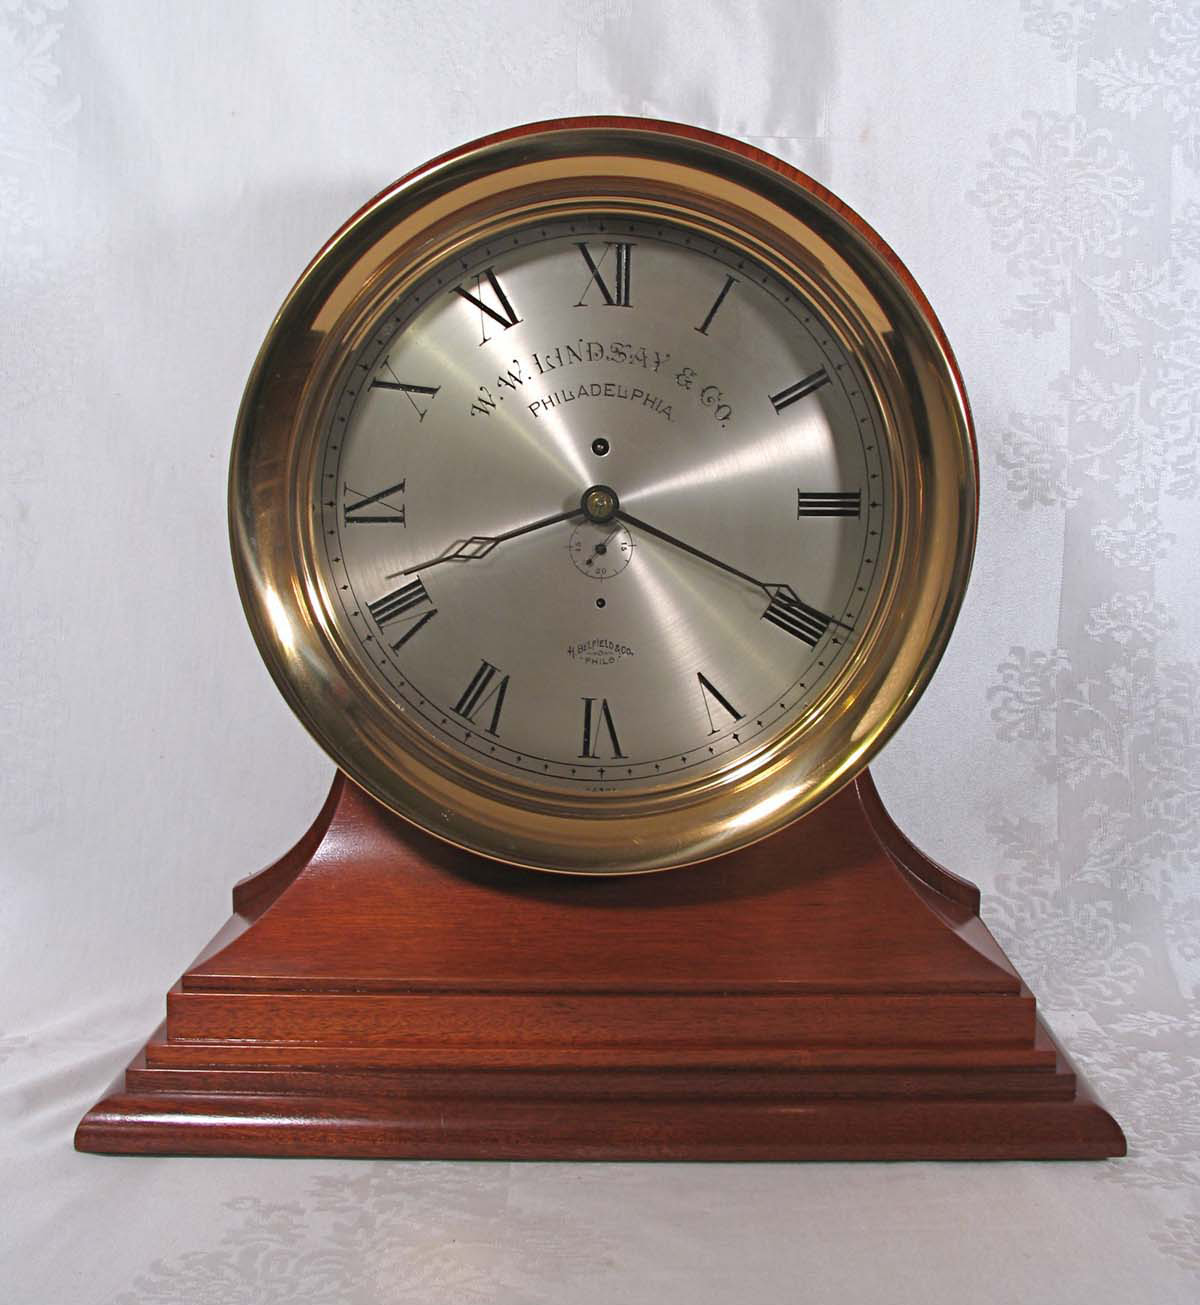 E. Howard 12 inch Marine Clock - W. W. Lindsay Company